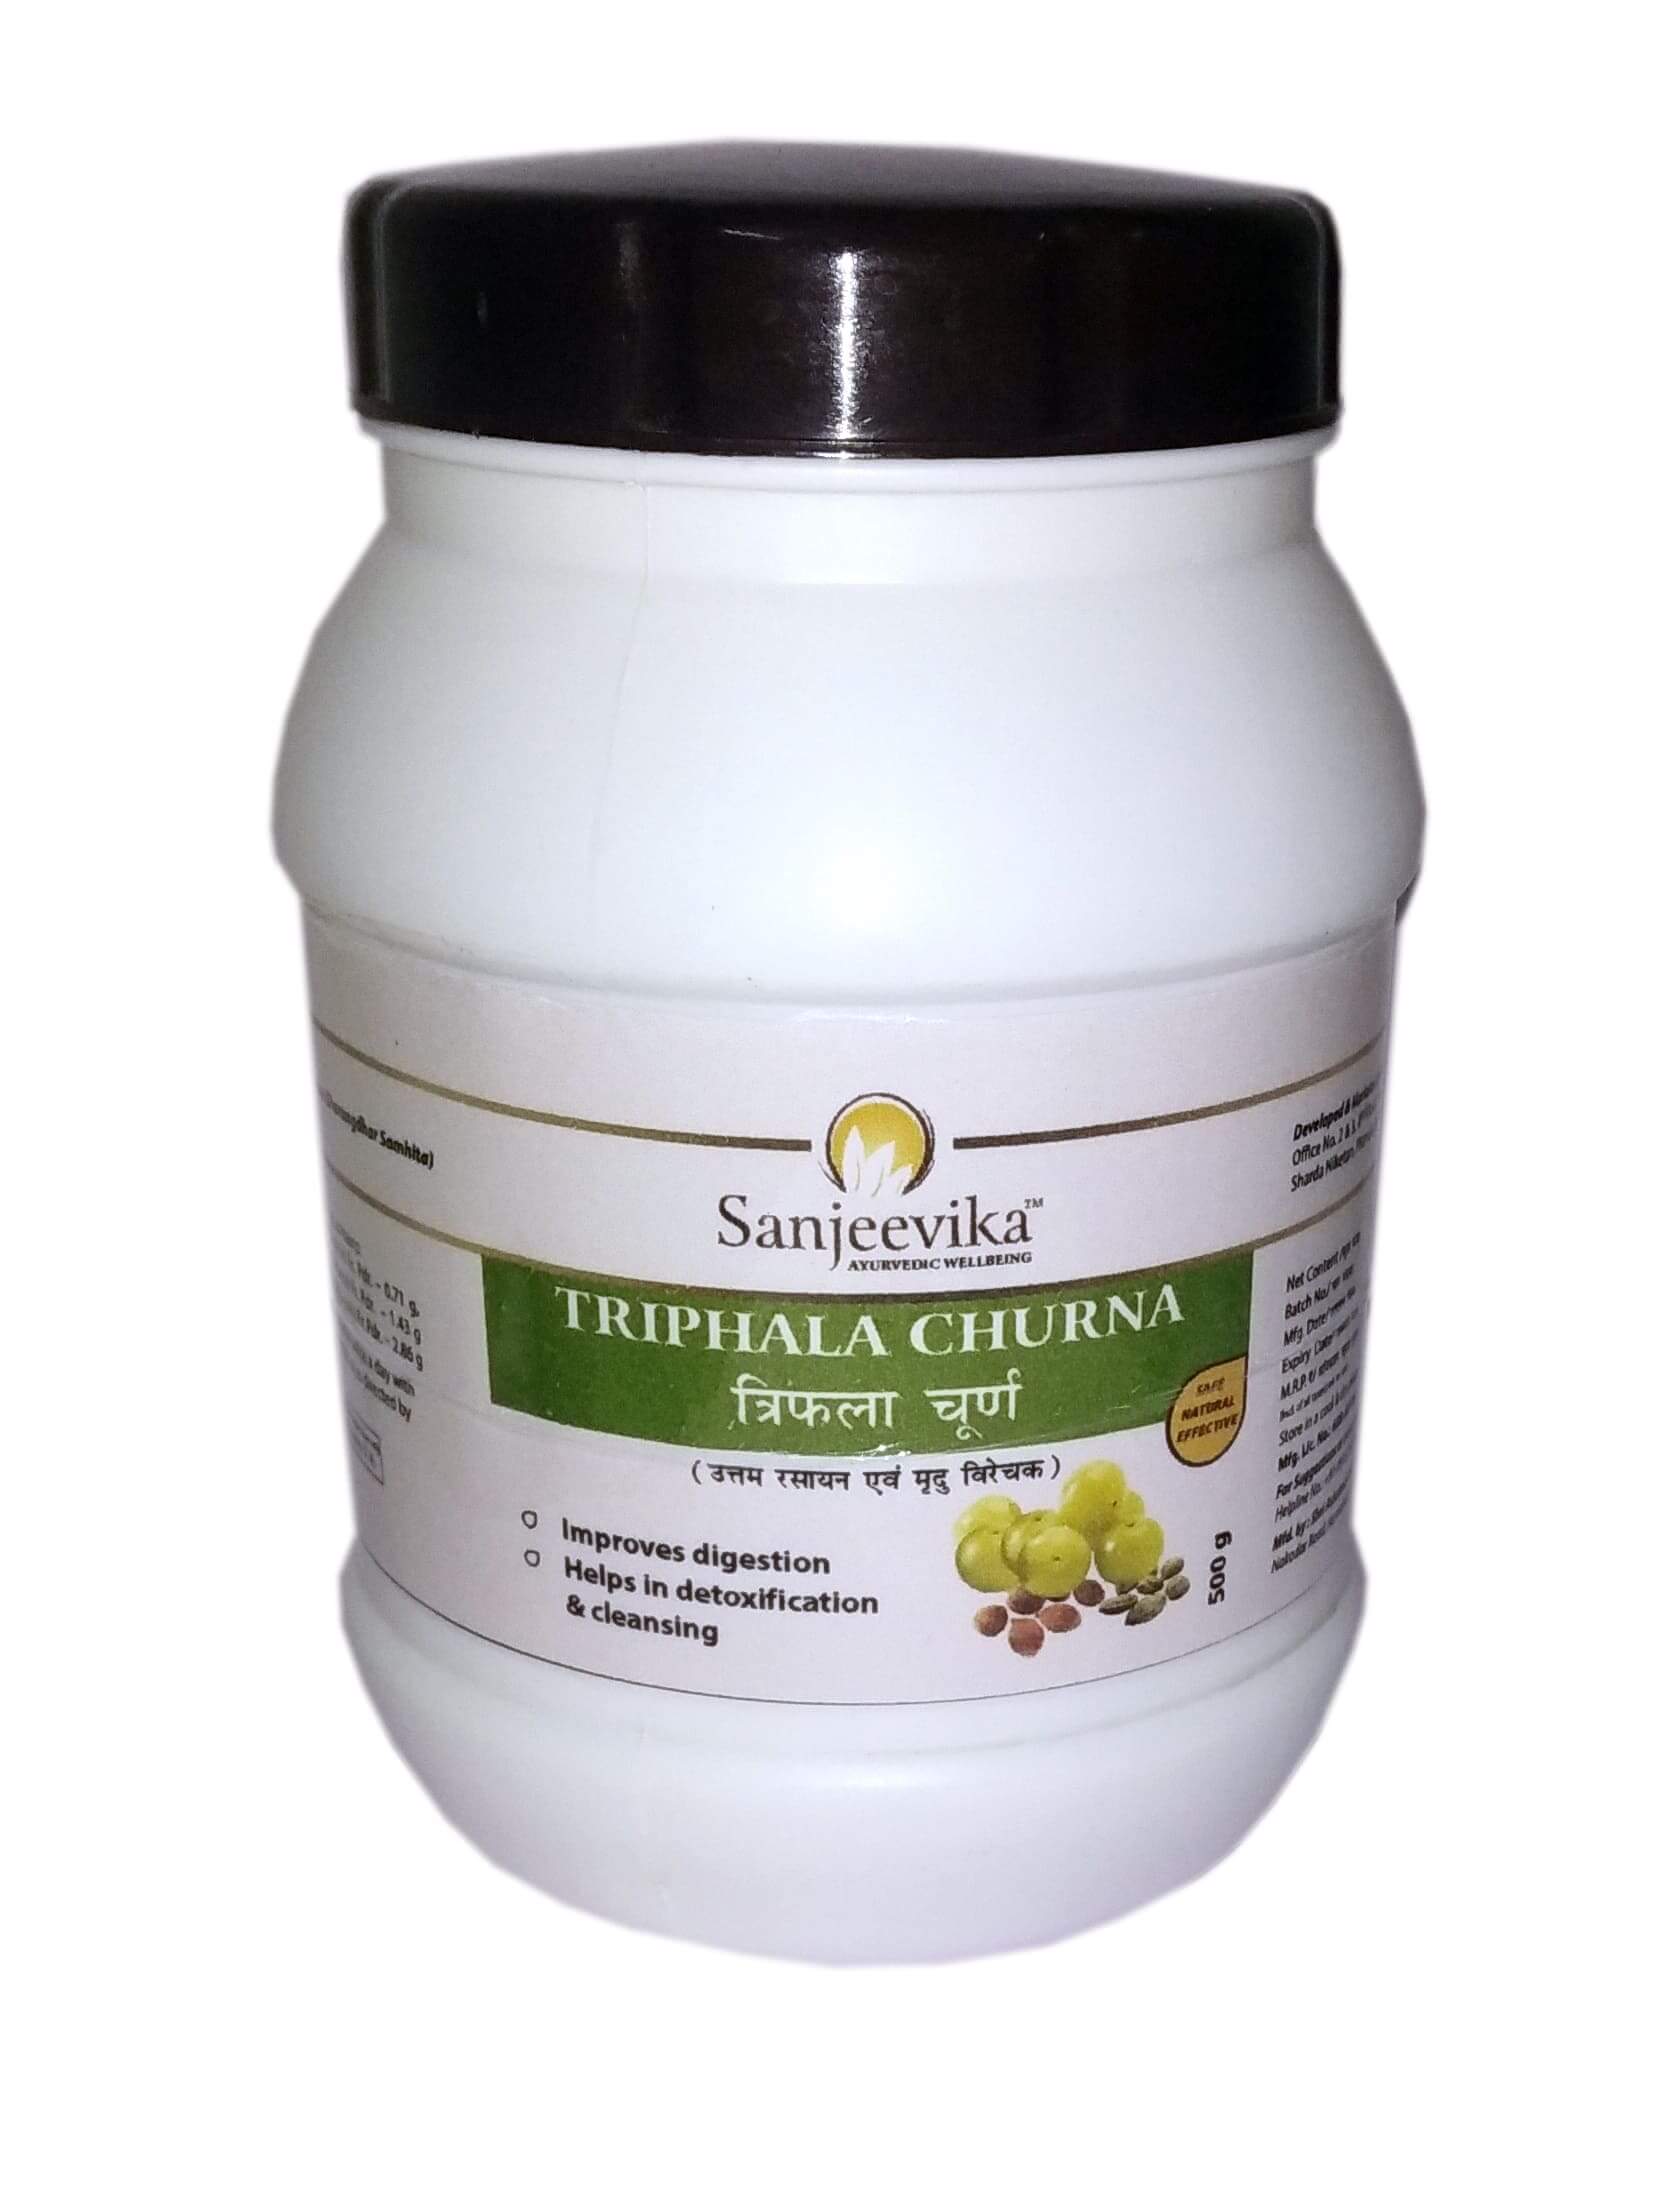 Hridra churna (Turmeric Powder)